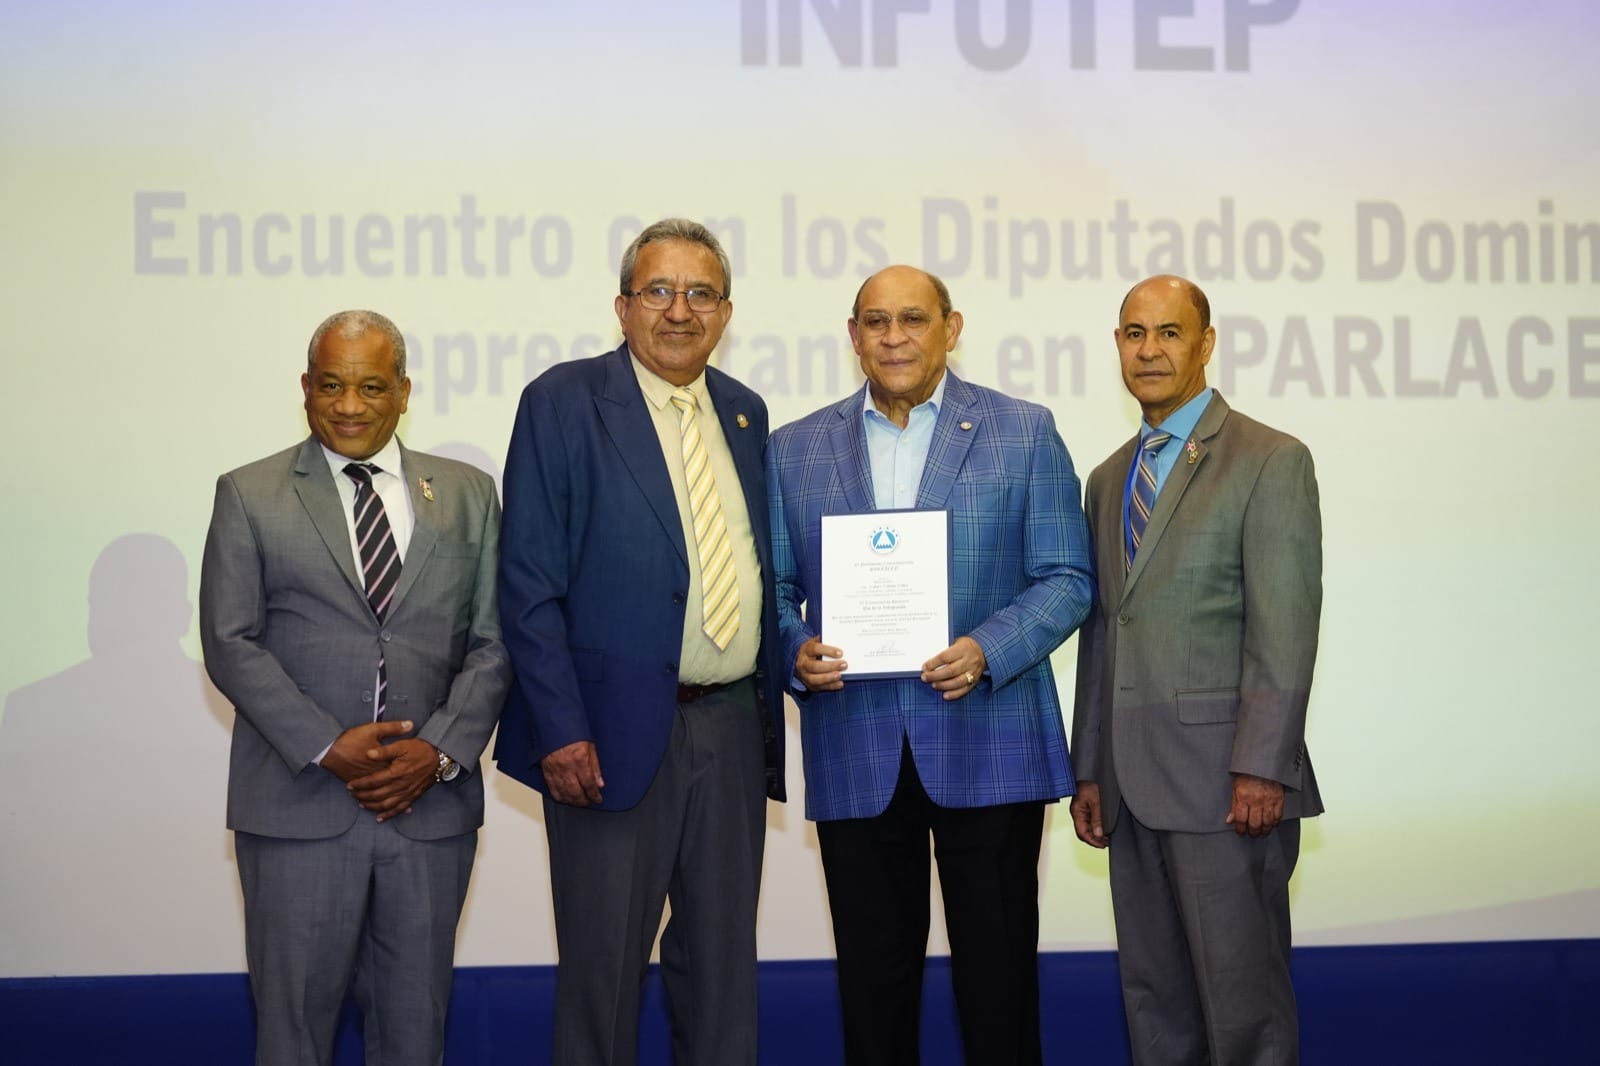 El reconocimiento fue entregado por el presidente del Parlacen, Armando Cerrud Avecedo